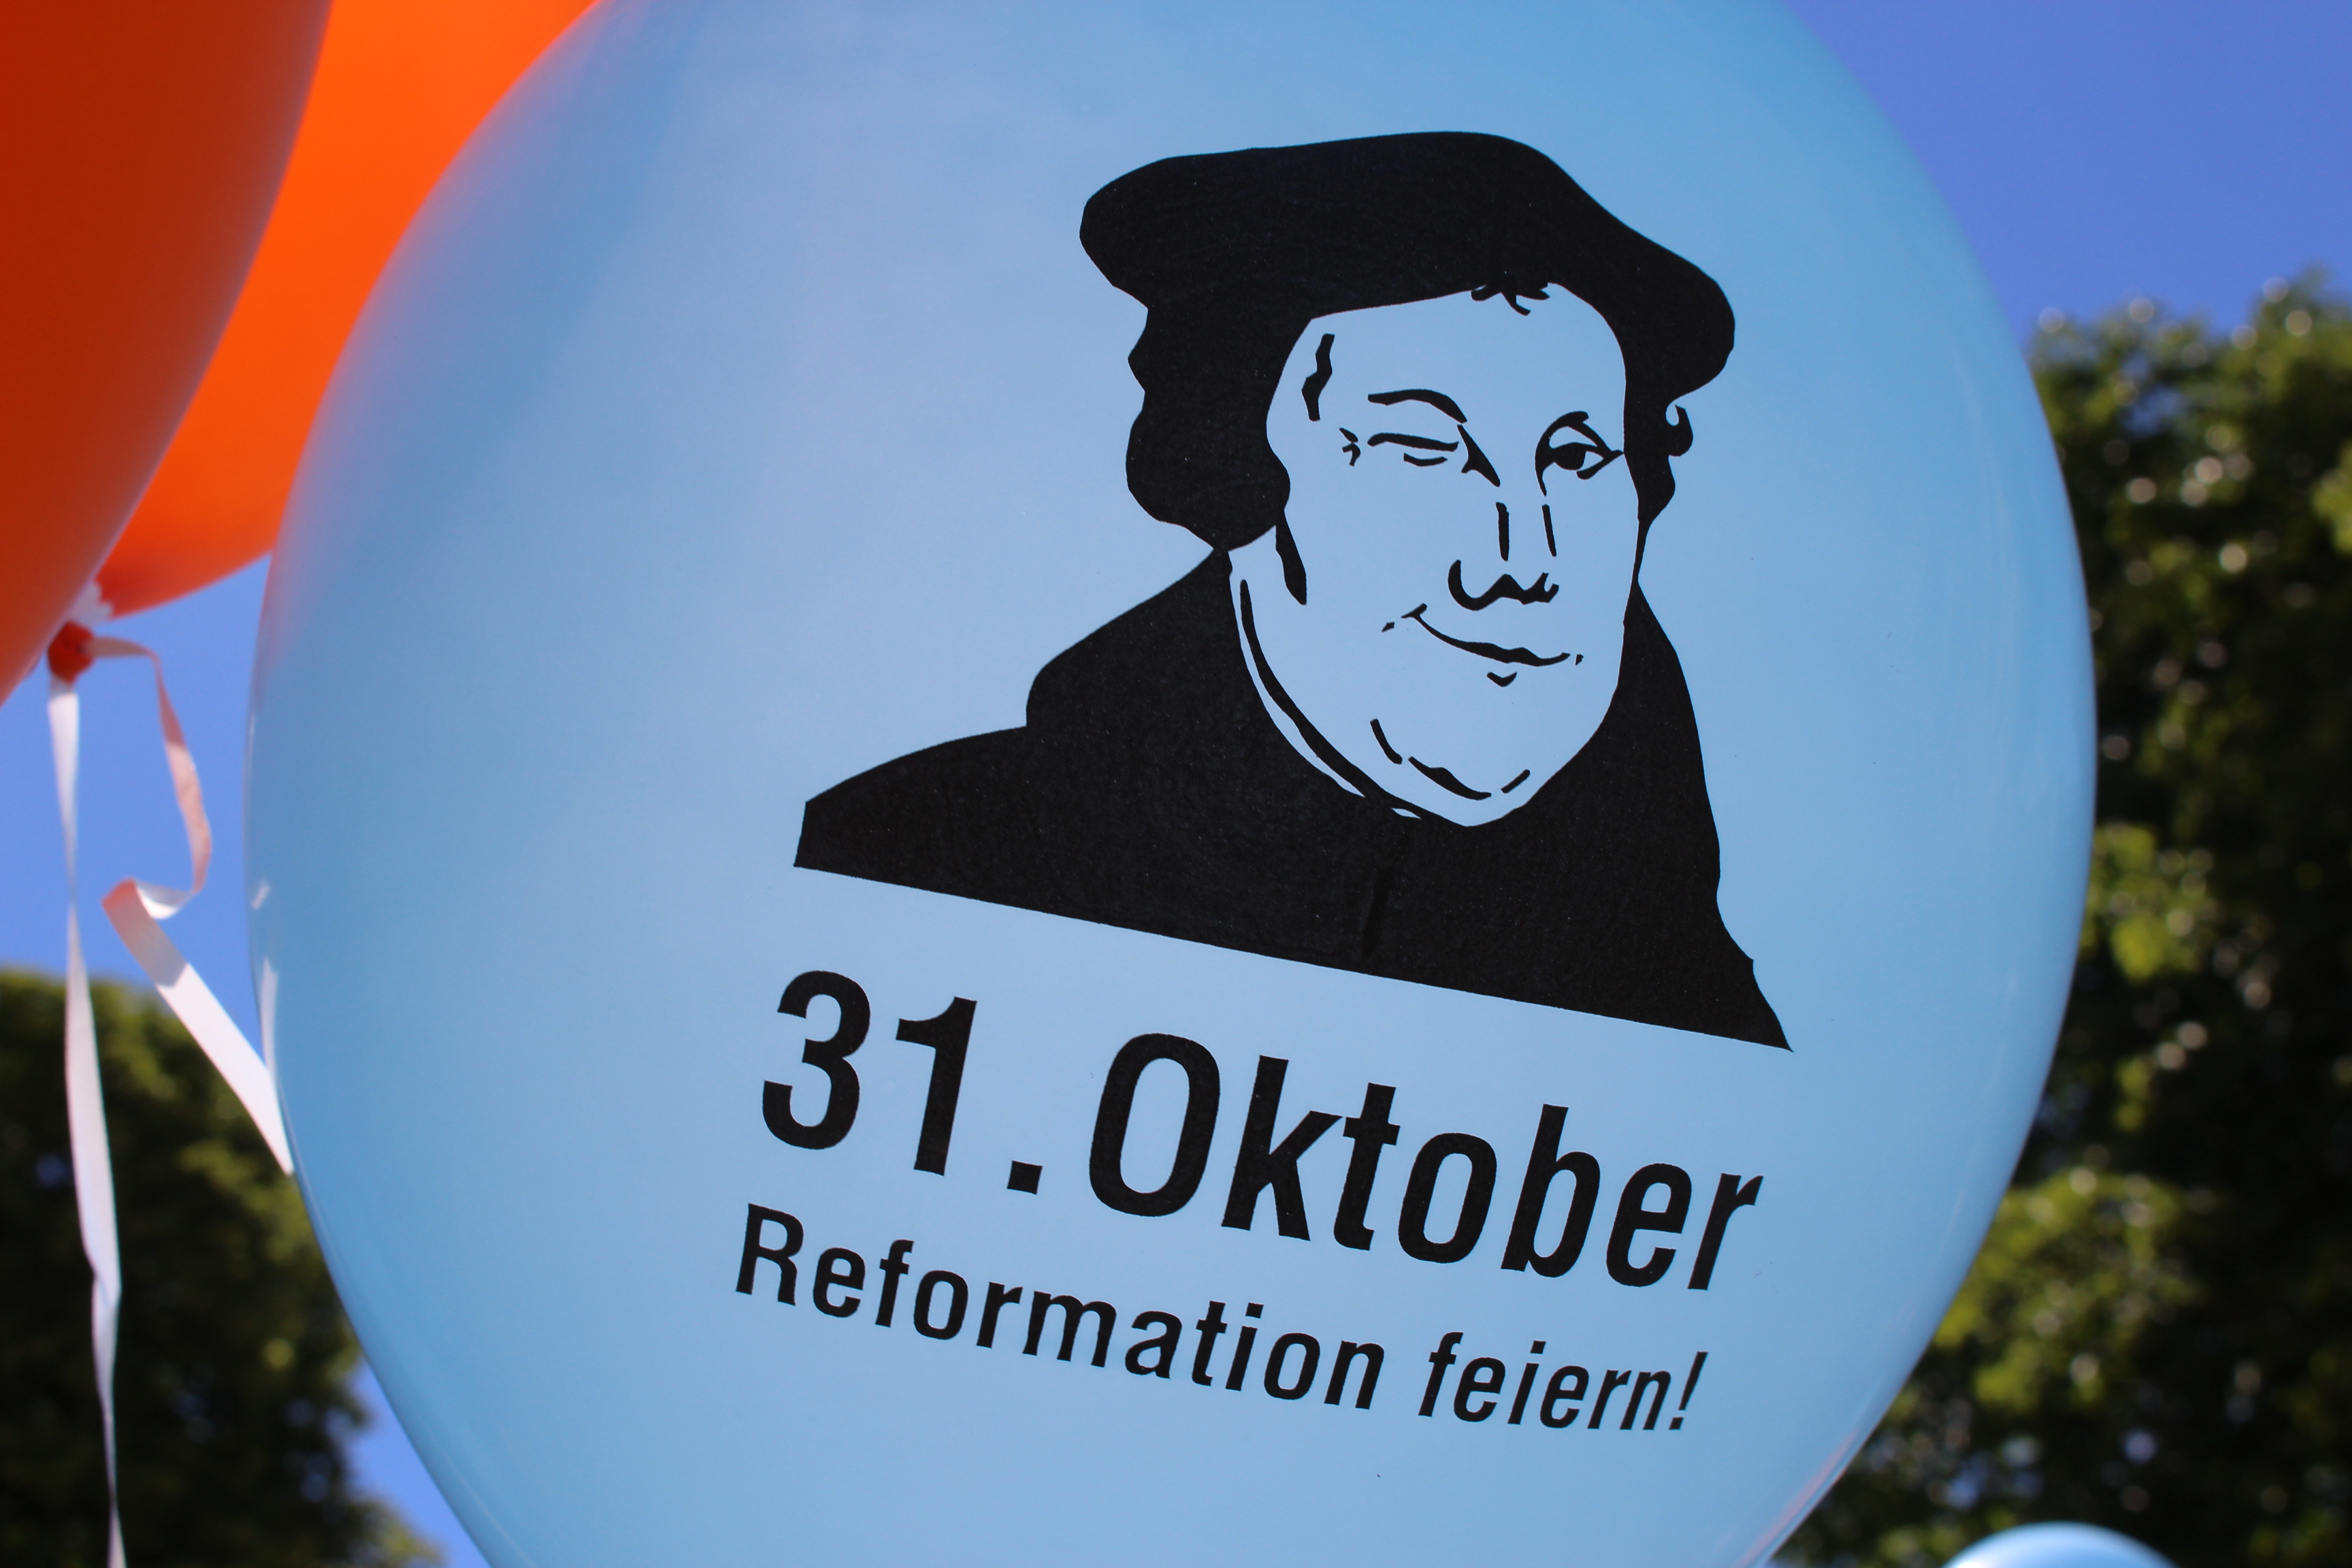 Reformation Feiern